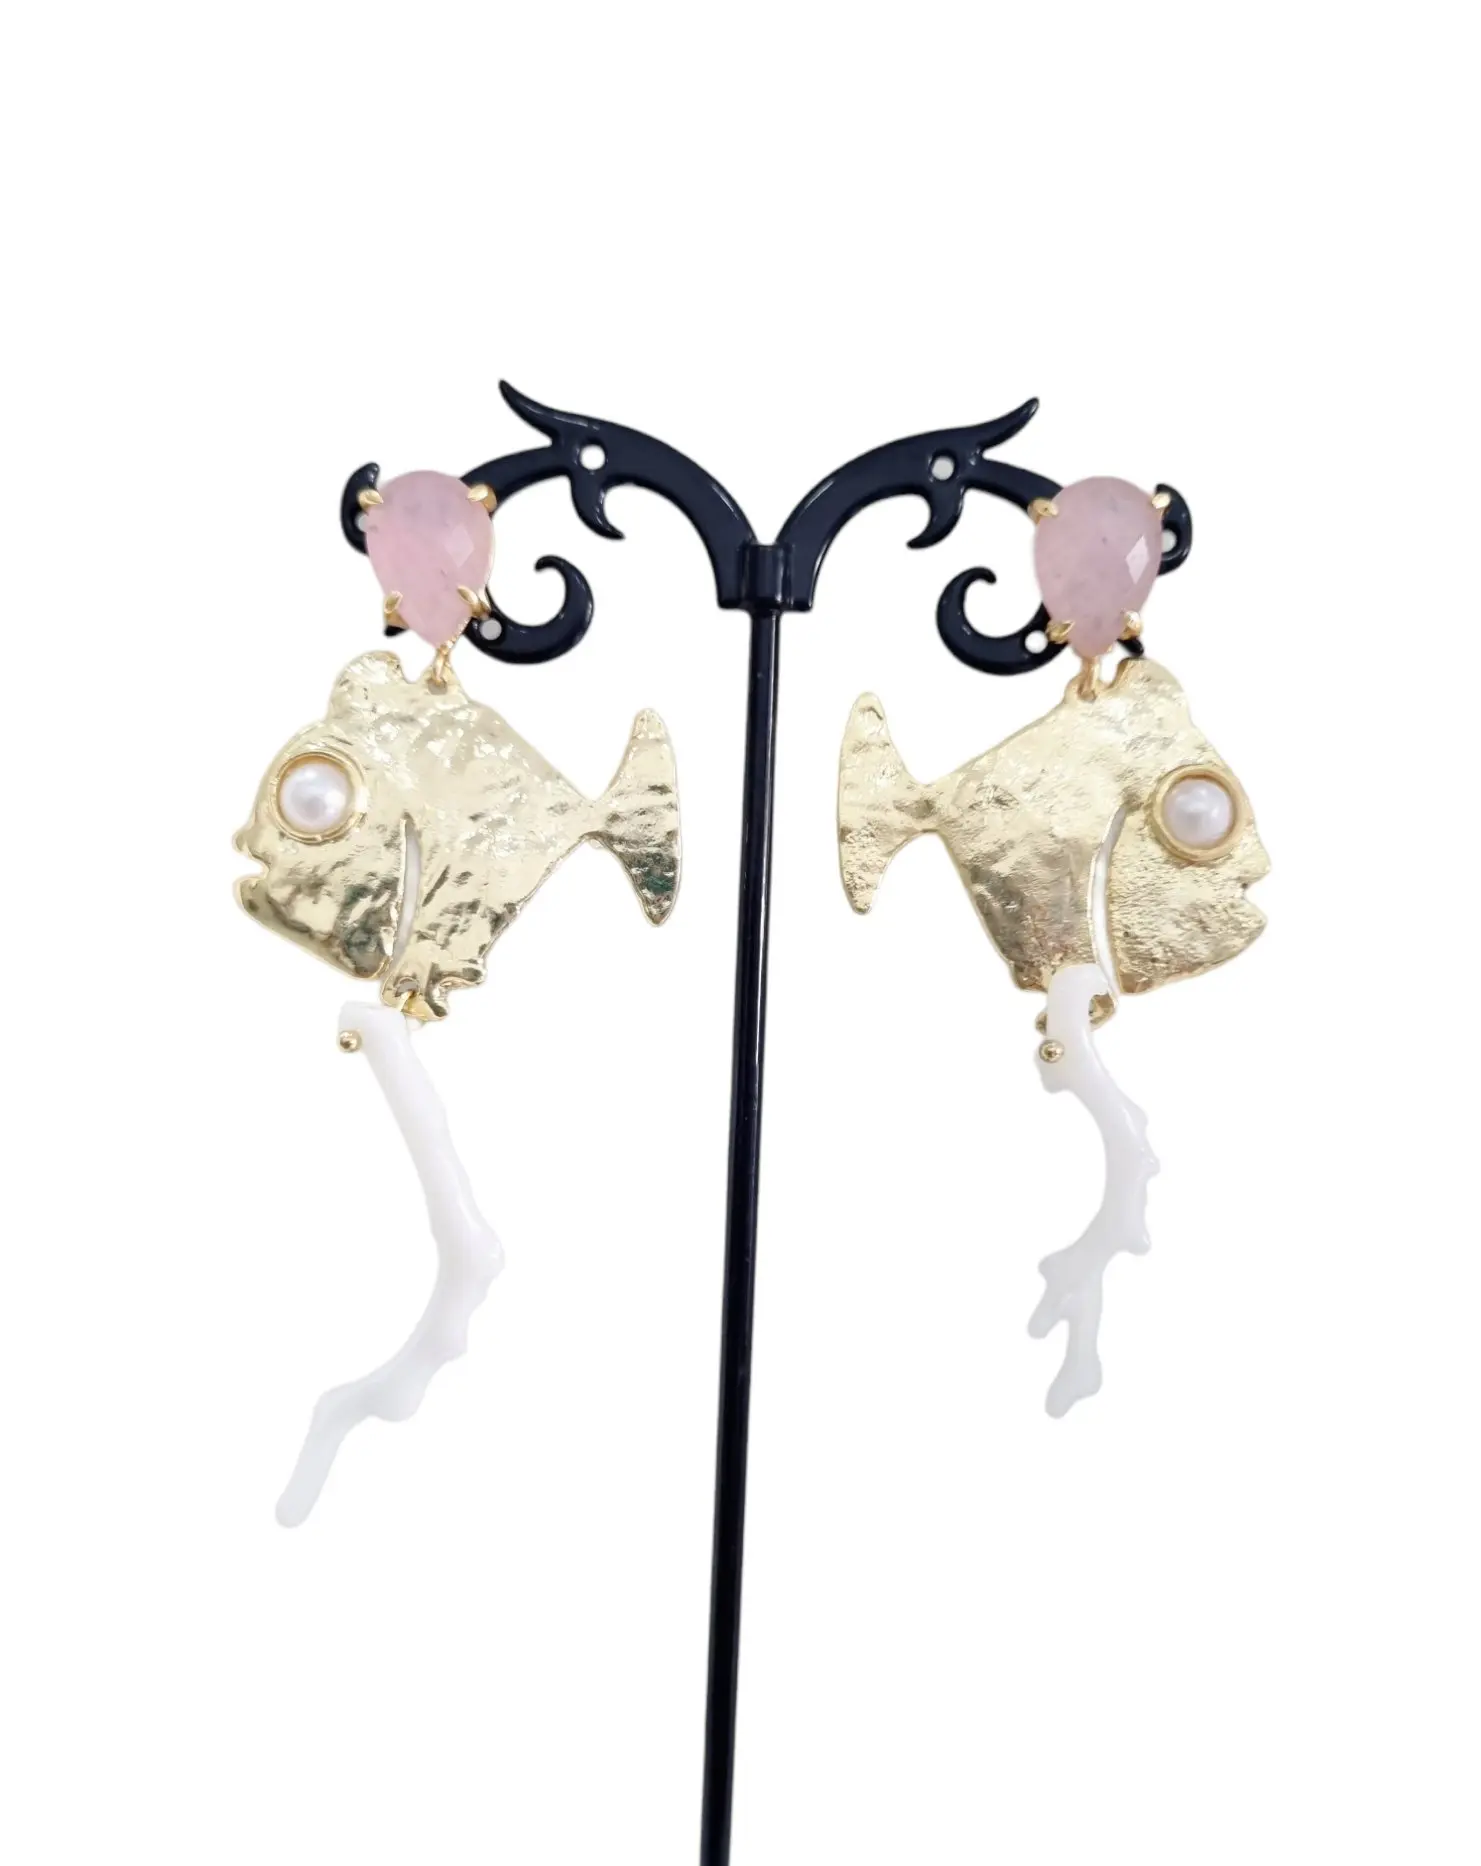 Boucles d'oreilles réalisées avec des poissons en laiton, du quartz rose et une branche de corail blanc.Longueur 8cmPoids 8,8gr